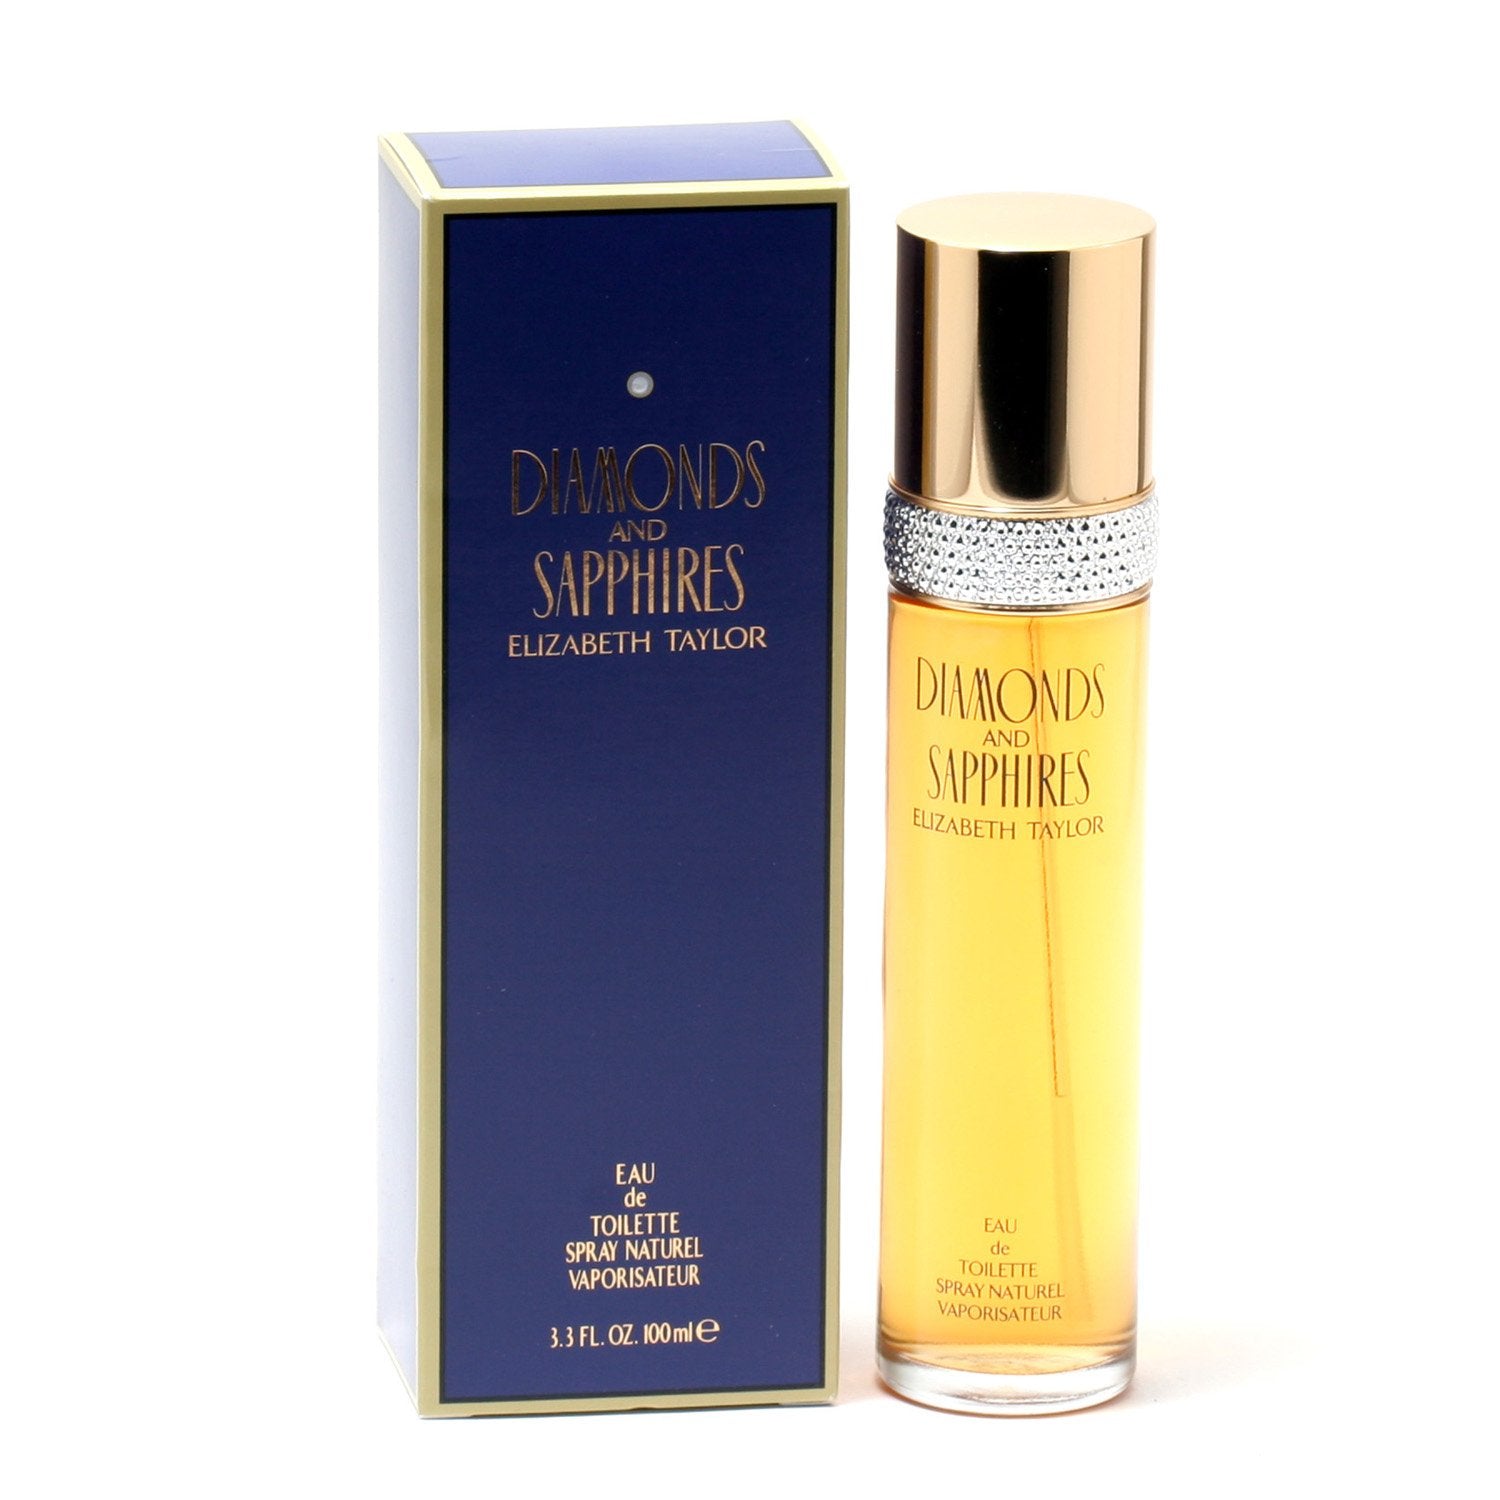 Perfume - DIAMONDS & SAPPHIRES FOR WOMEN BY ELIZABETH TAYLOR - EAU DE TOILETTE SPRAY, 3.3 OZ